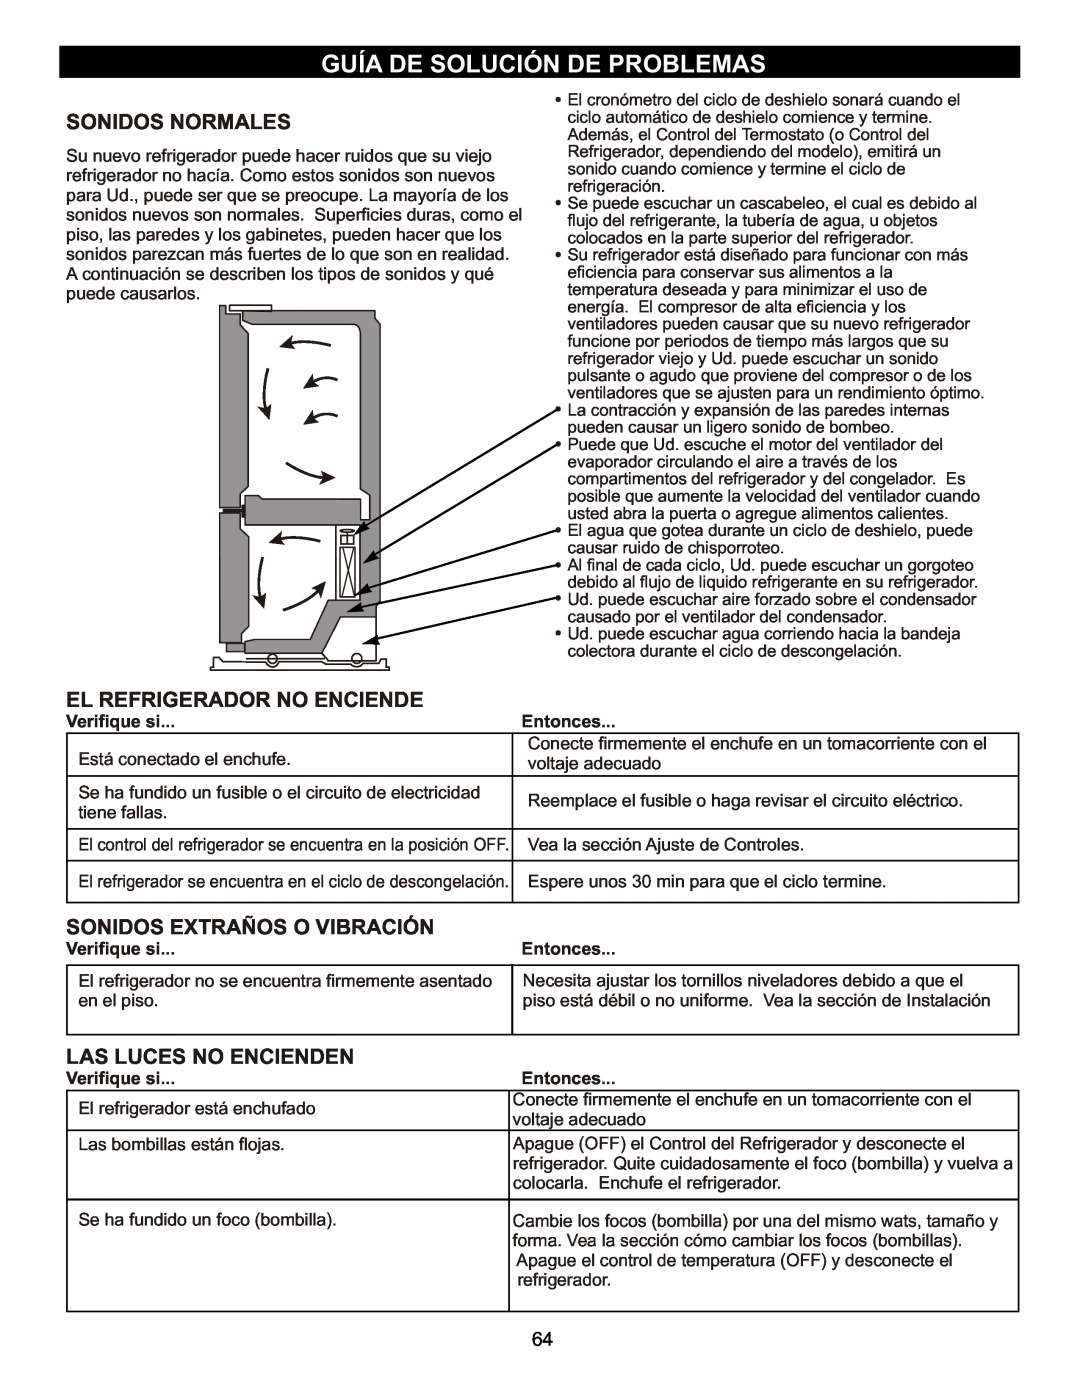 LG Electronics MFL47277003 Guía De Solución De Problemas, El Refrigerador No Enciende, Sonidos Extraños O Vibración 